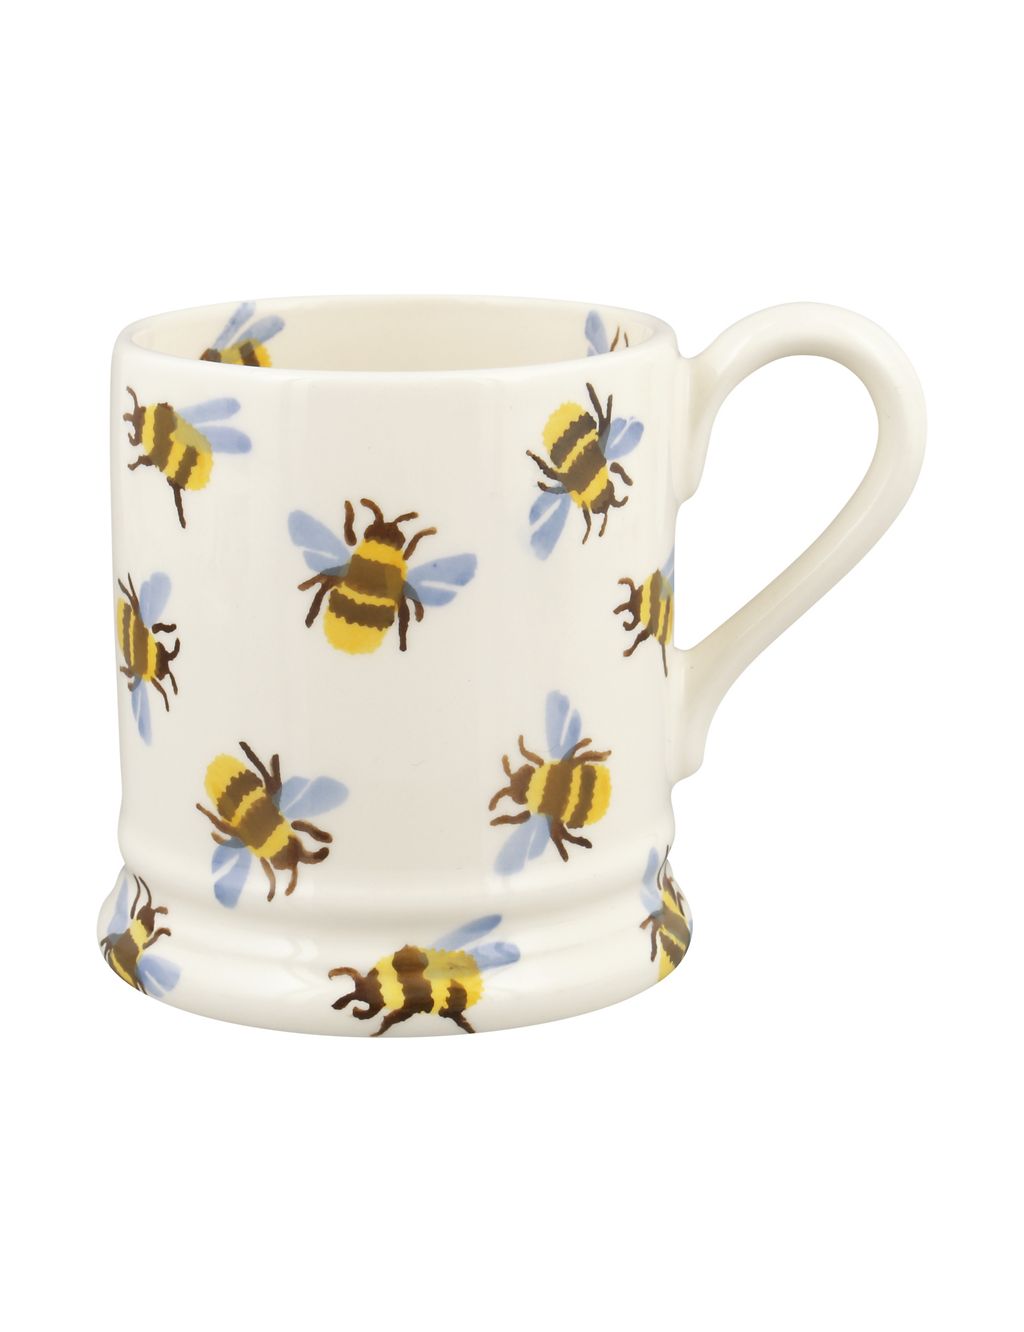 Bumblebee Mug 1 of 6